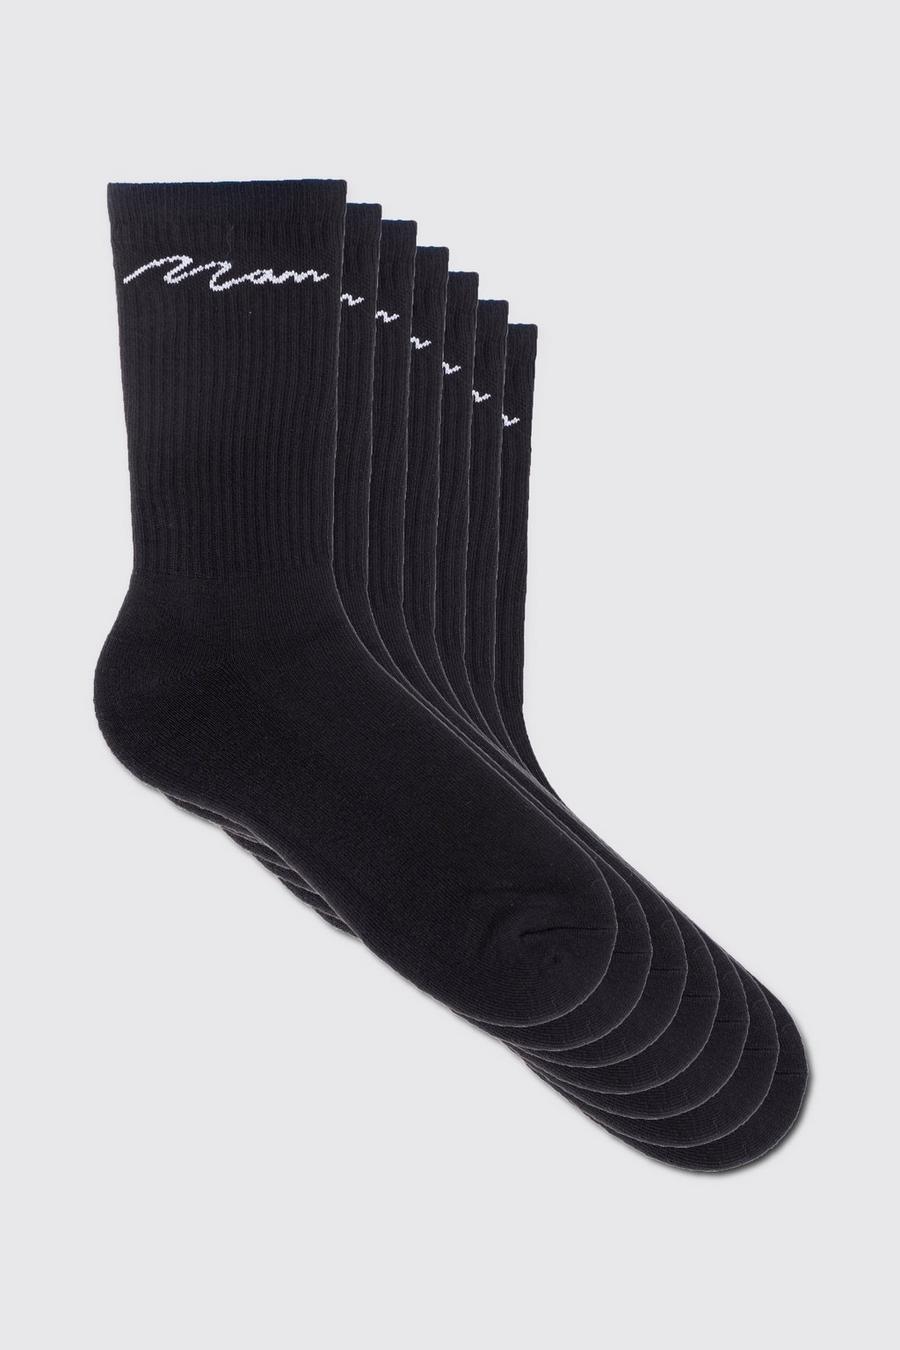 Pack de 7 pares de calcetines deportivos con firma MAN, Black